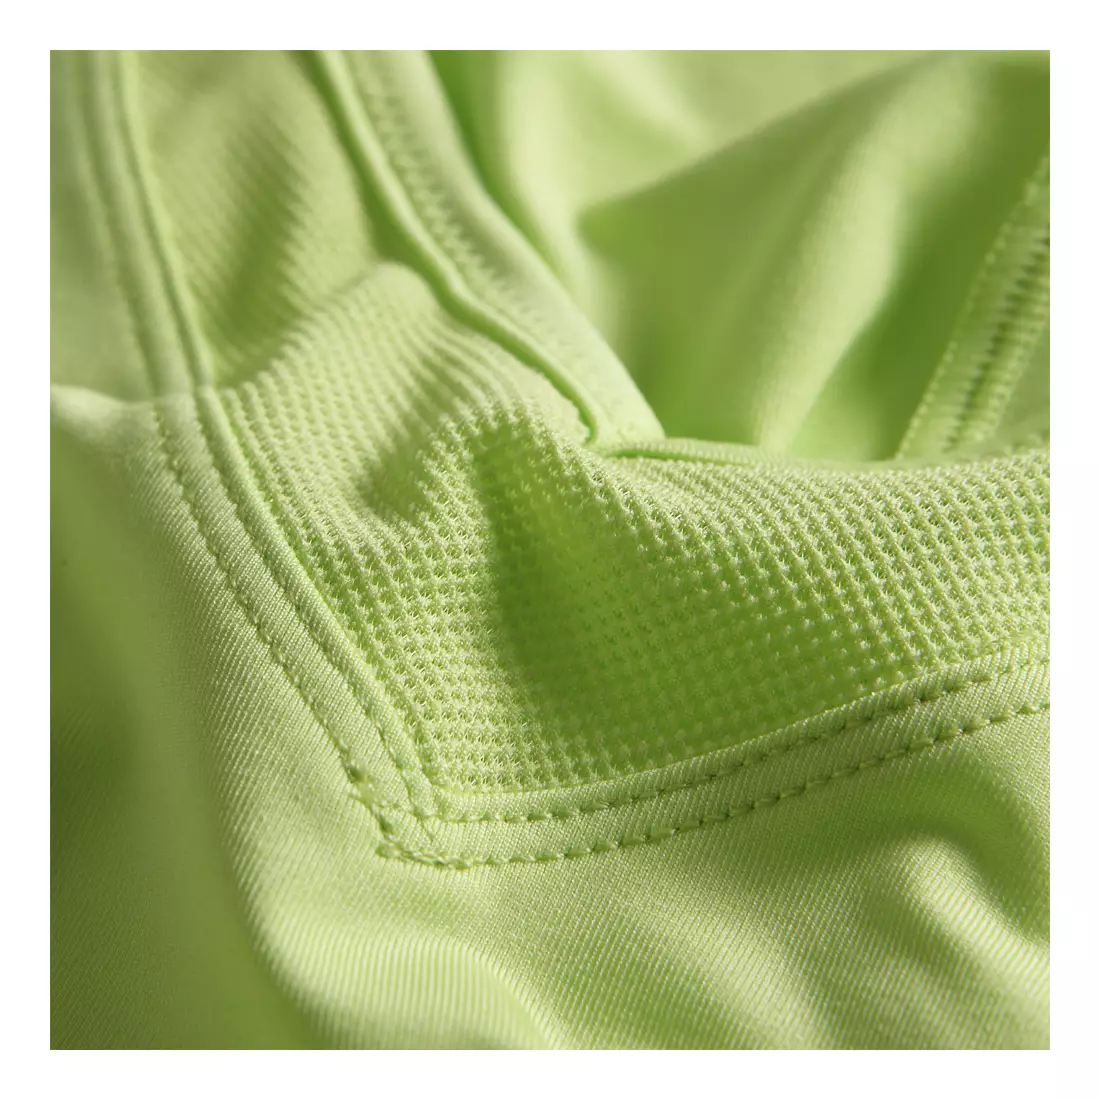 ASICS 110590-0423 PERFORMANCE TEE - tricou pentru alergare pentru femei, culoare: Verde